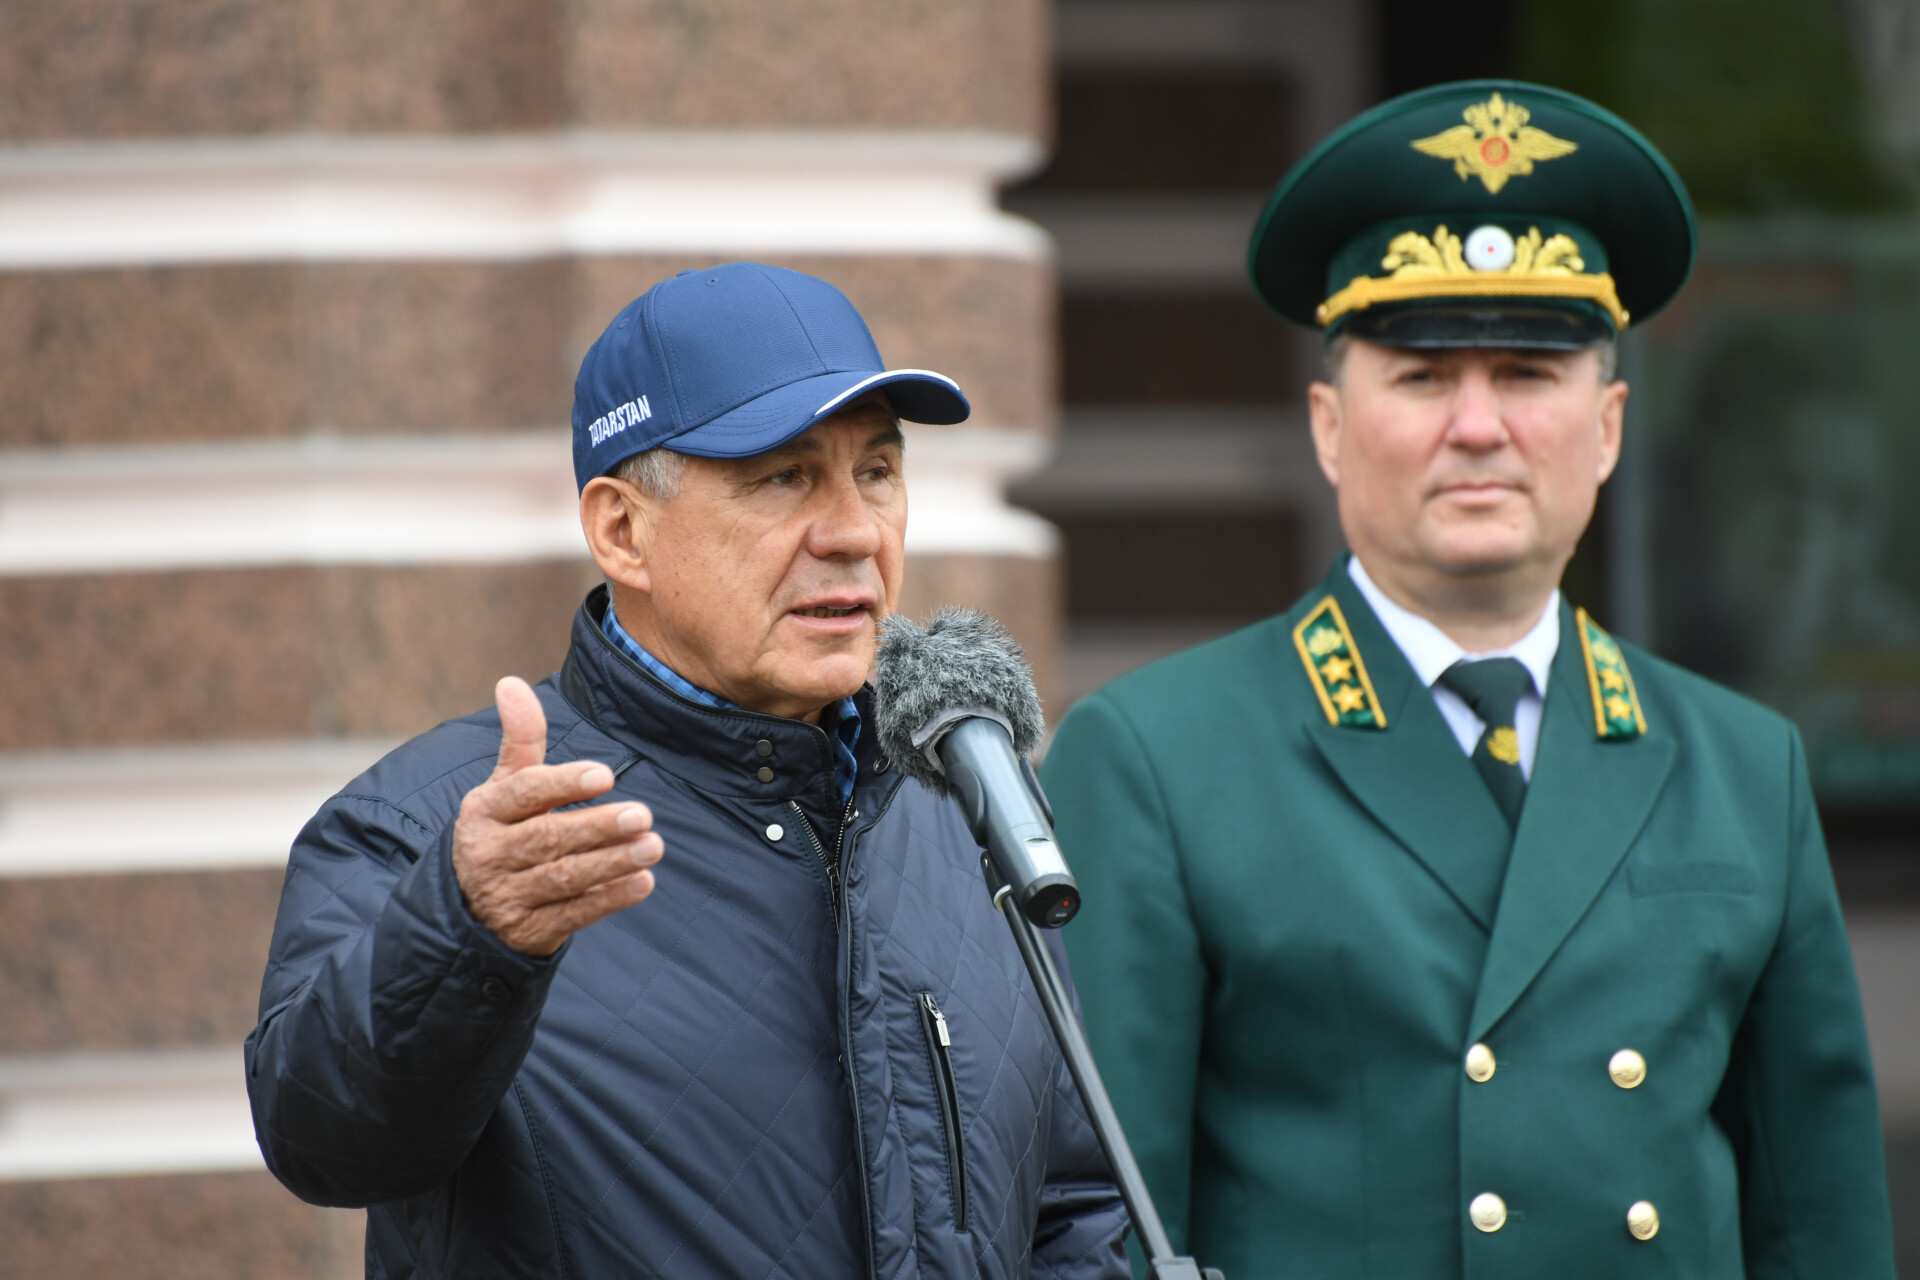 Минниханов вручил лесникам Татарстана ключи от автомобилей «Lada Niva legend»